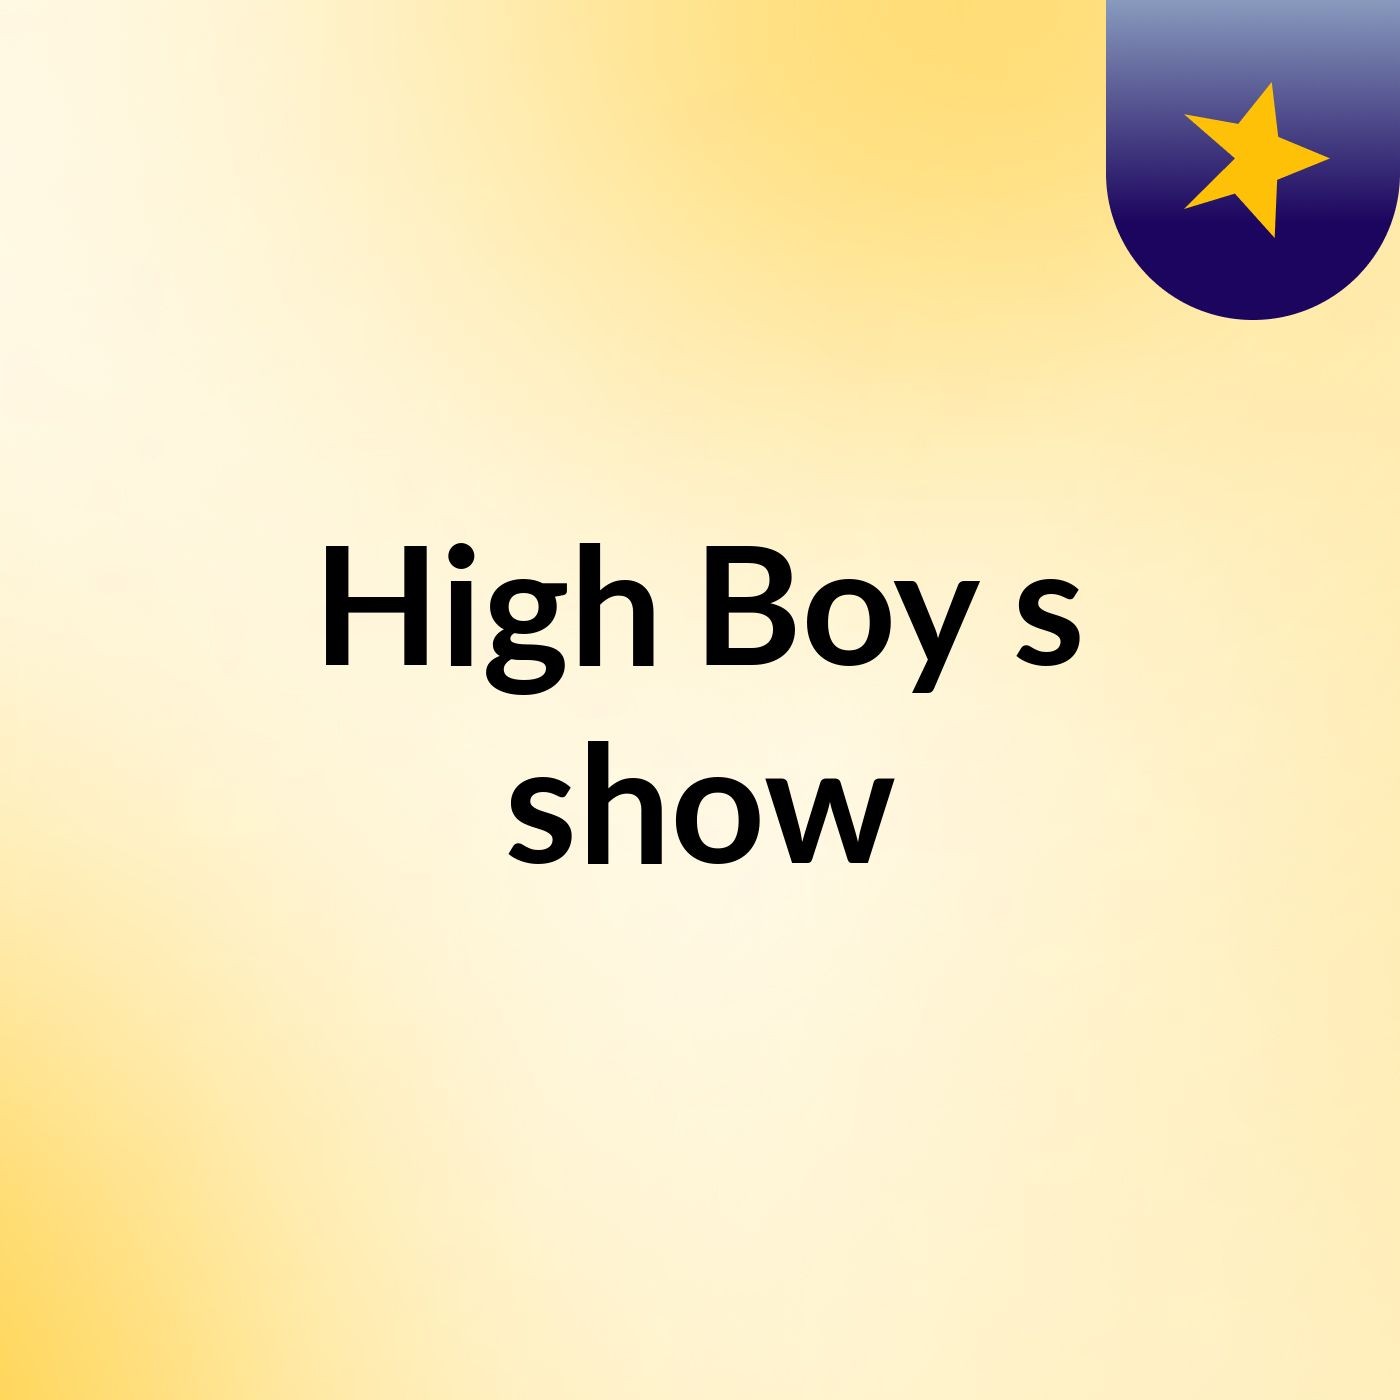 High Boy's show